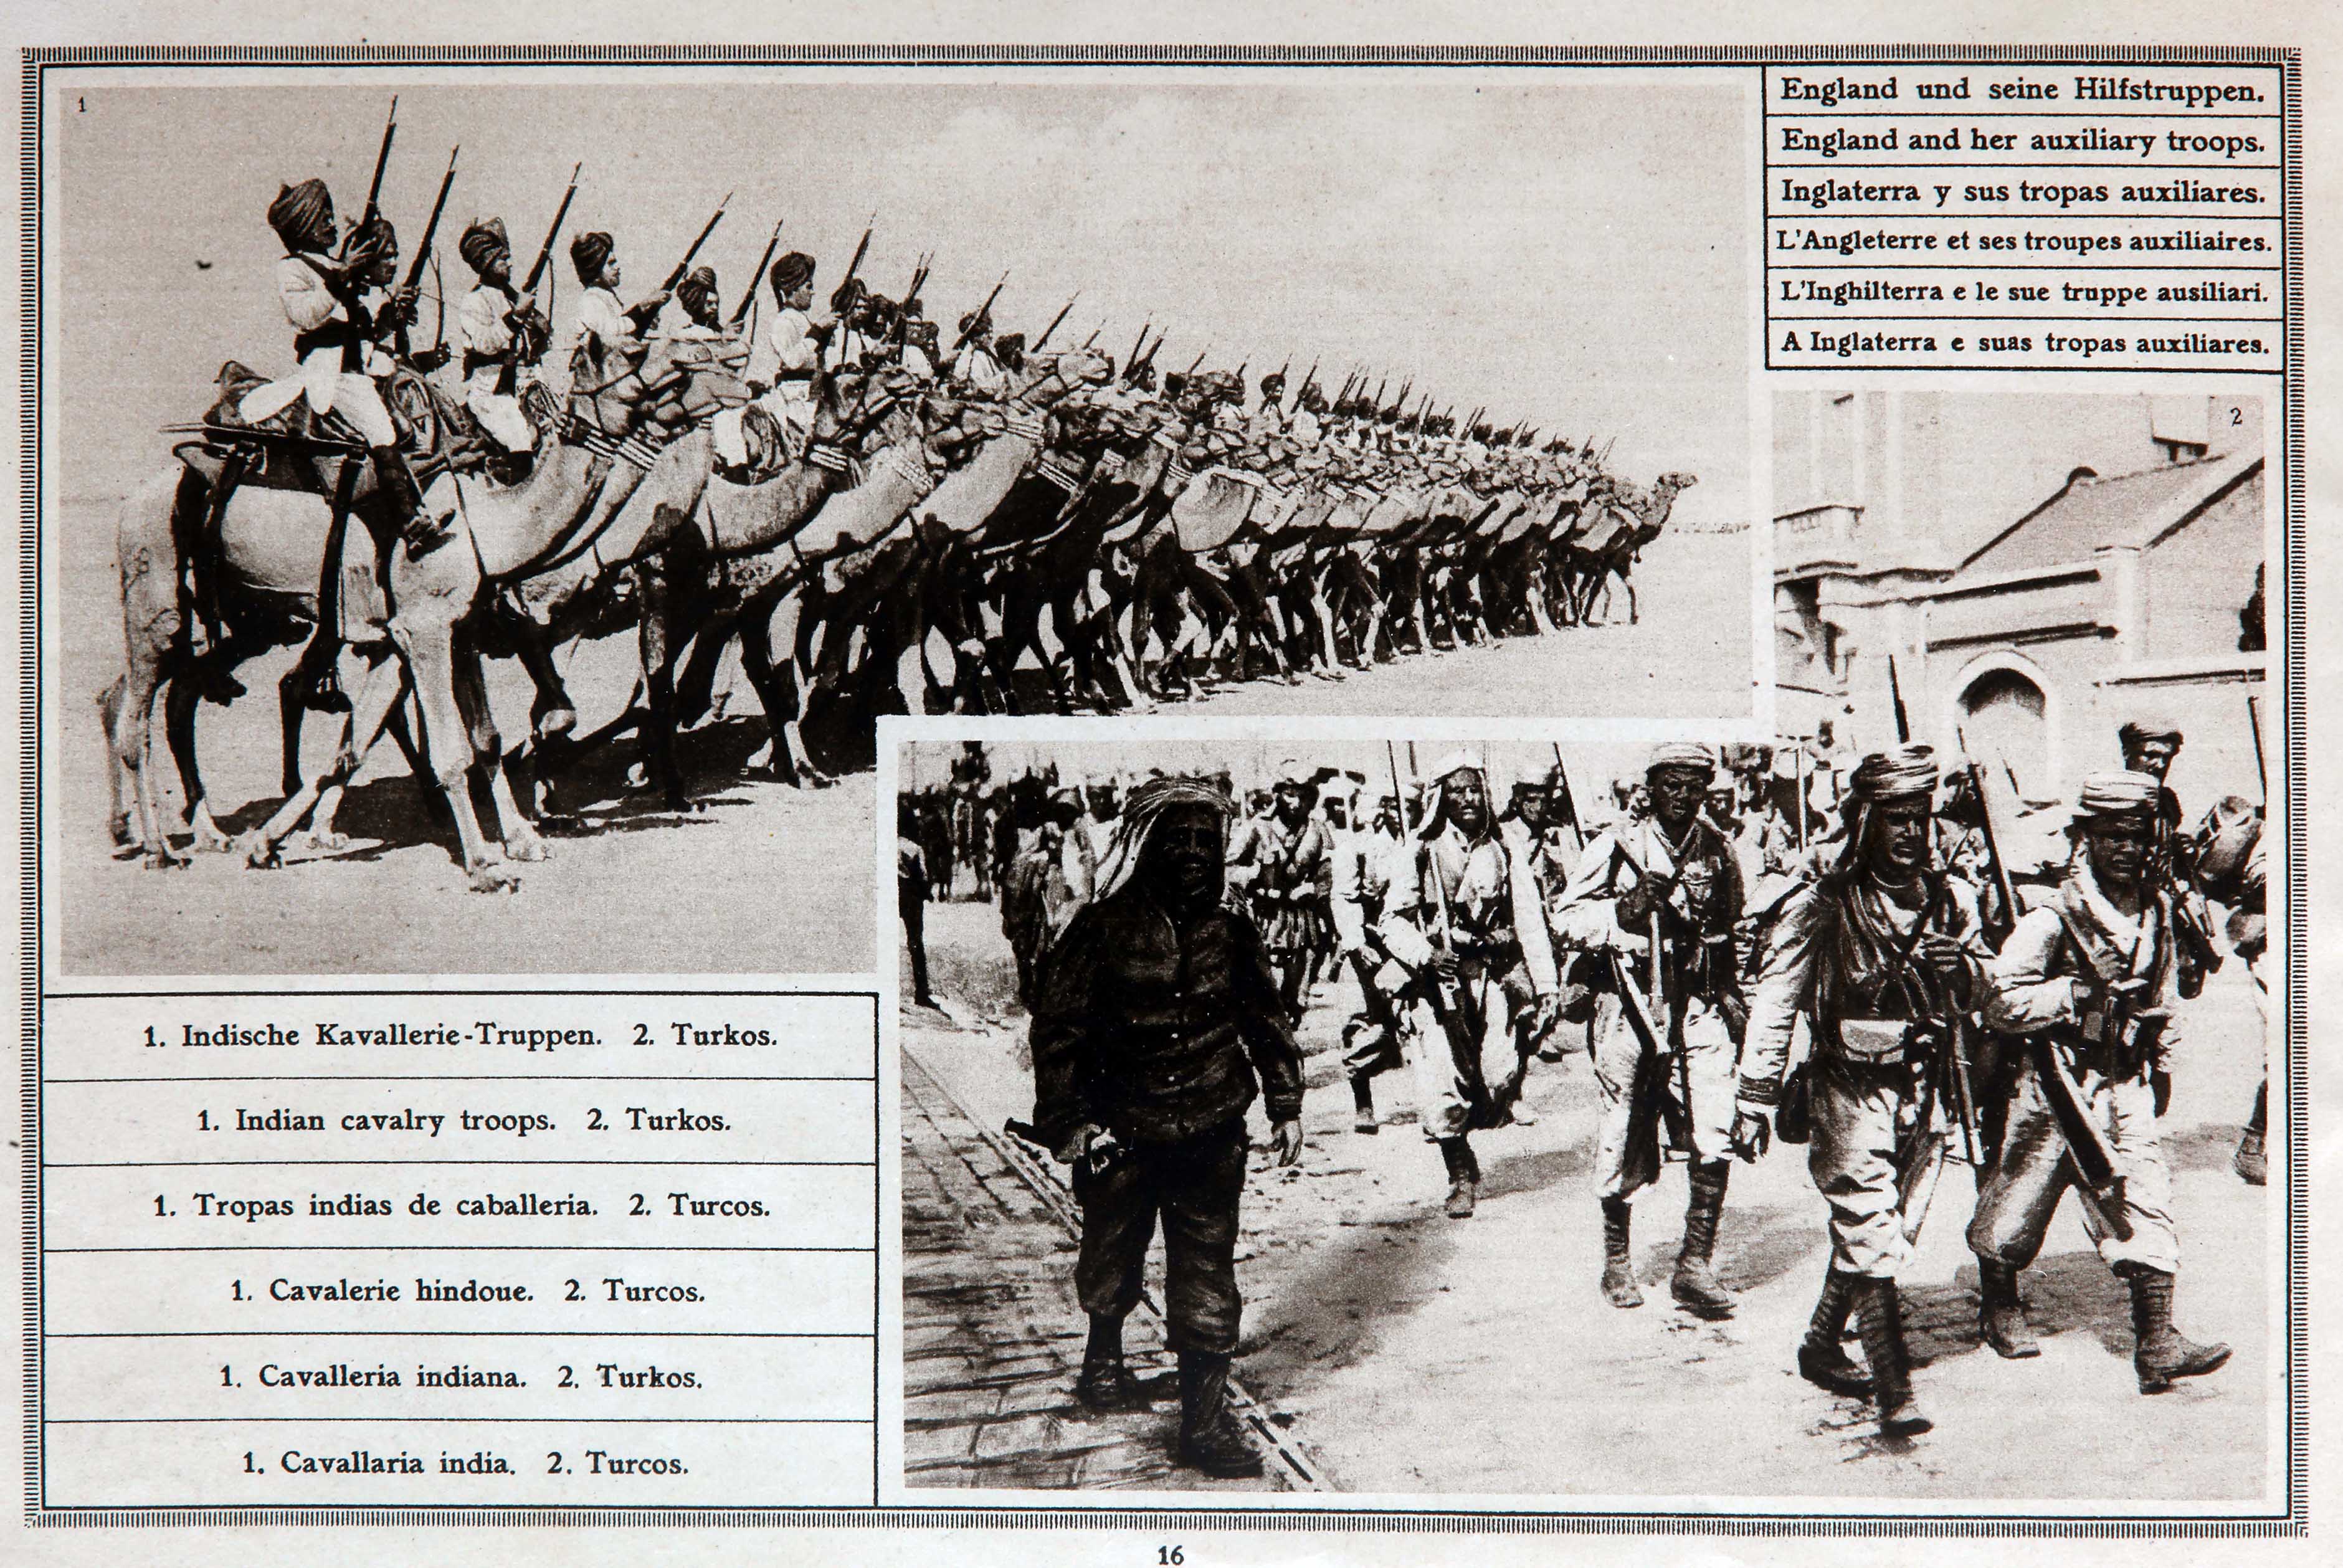  Immagini di truppe coloniali nell'esercito britannico da una rivista tedesca dell'epoca [collezione privata di Piero Cavagna]